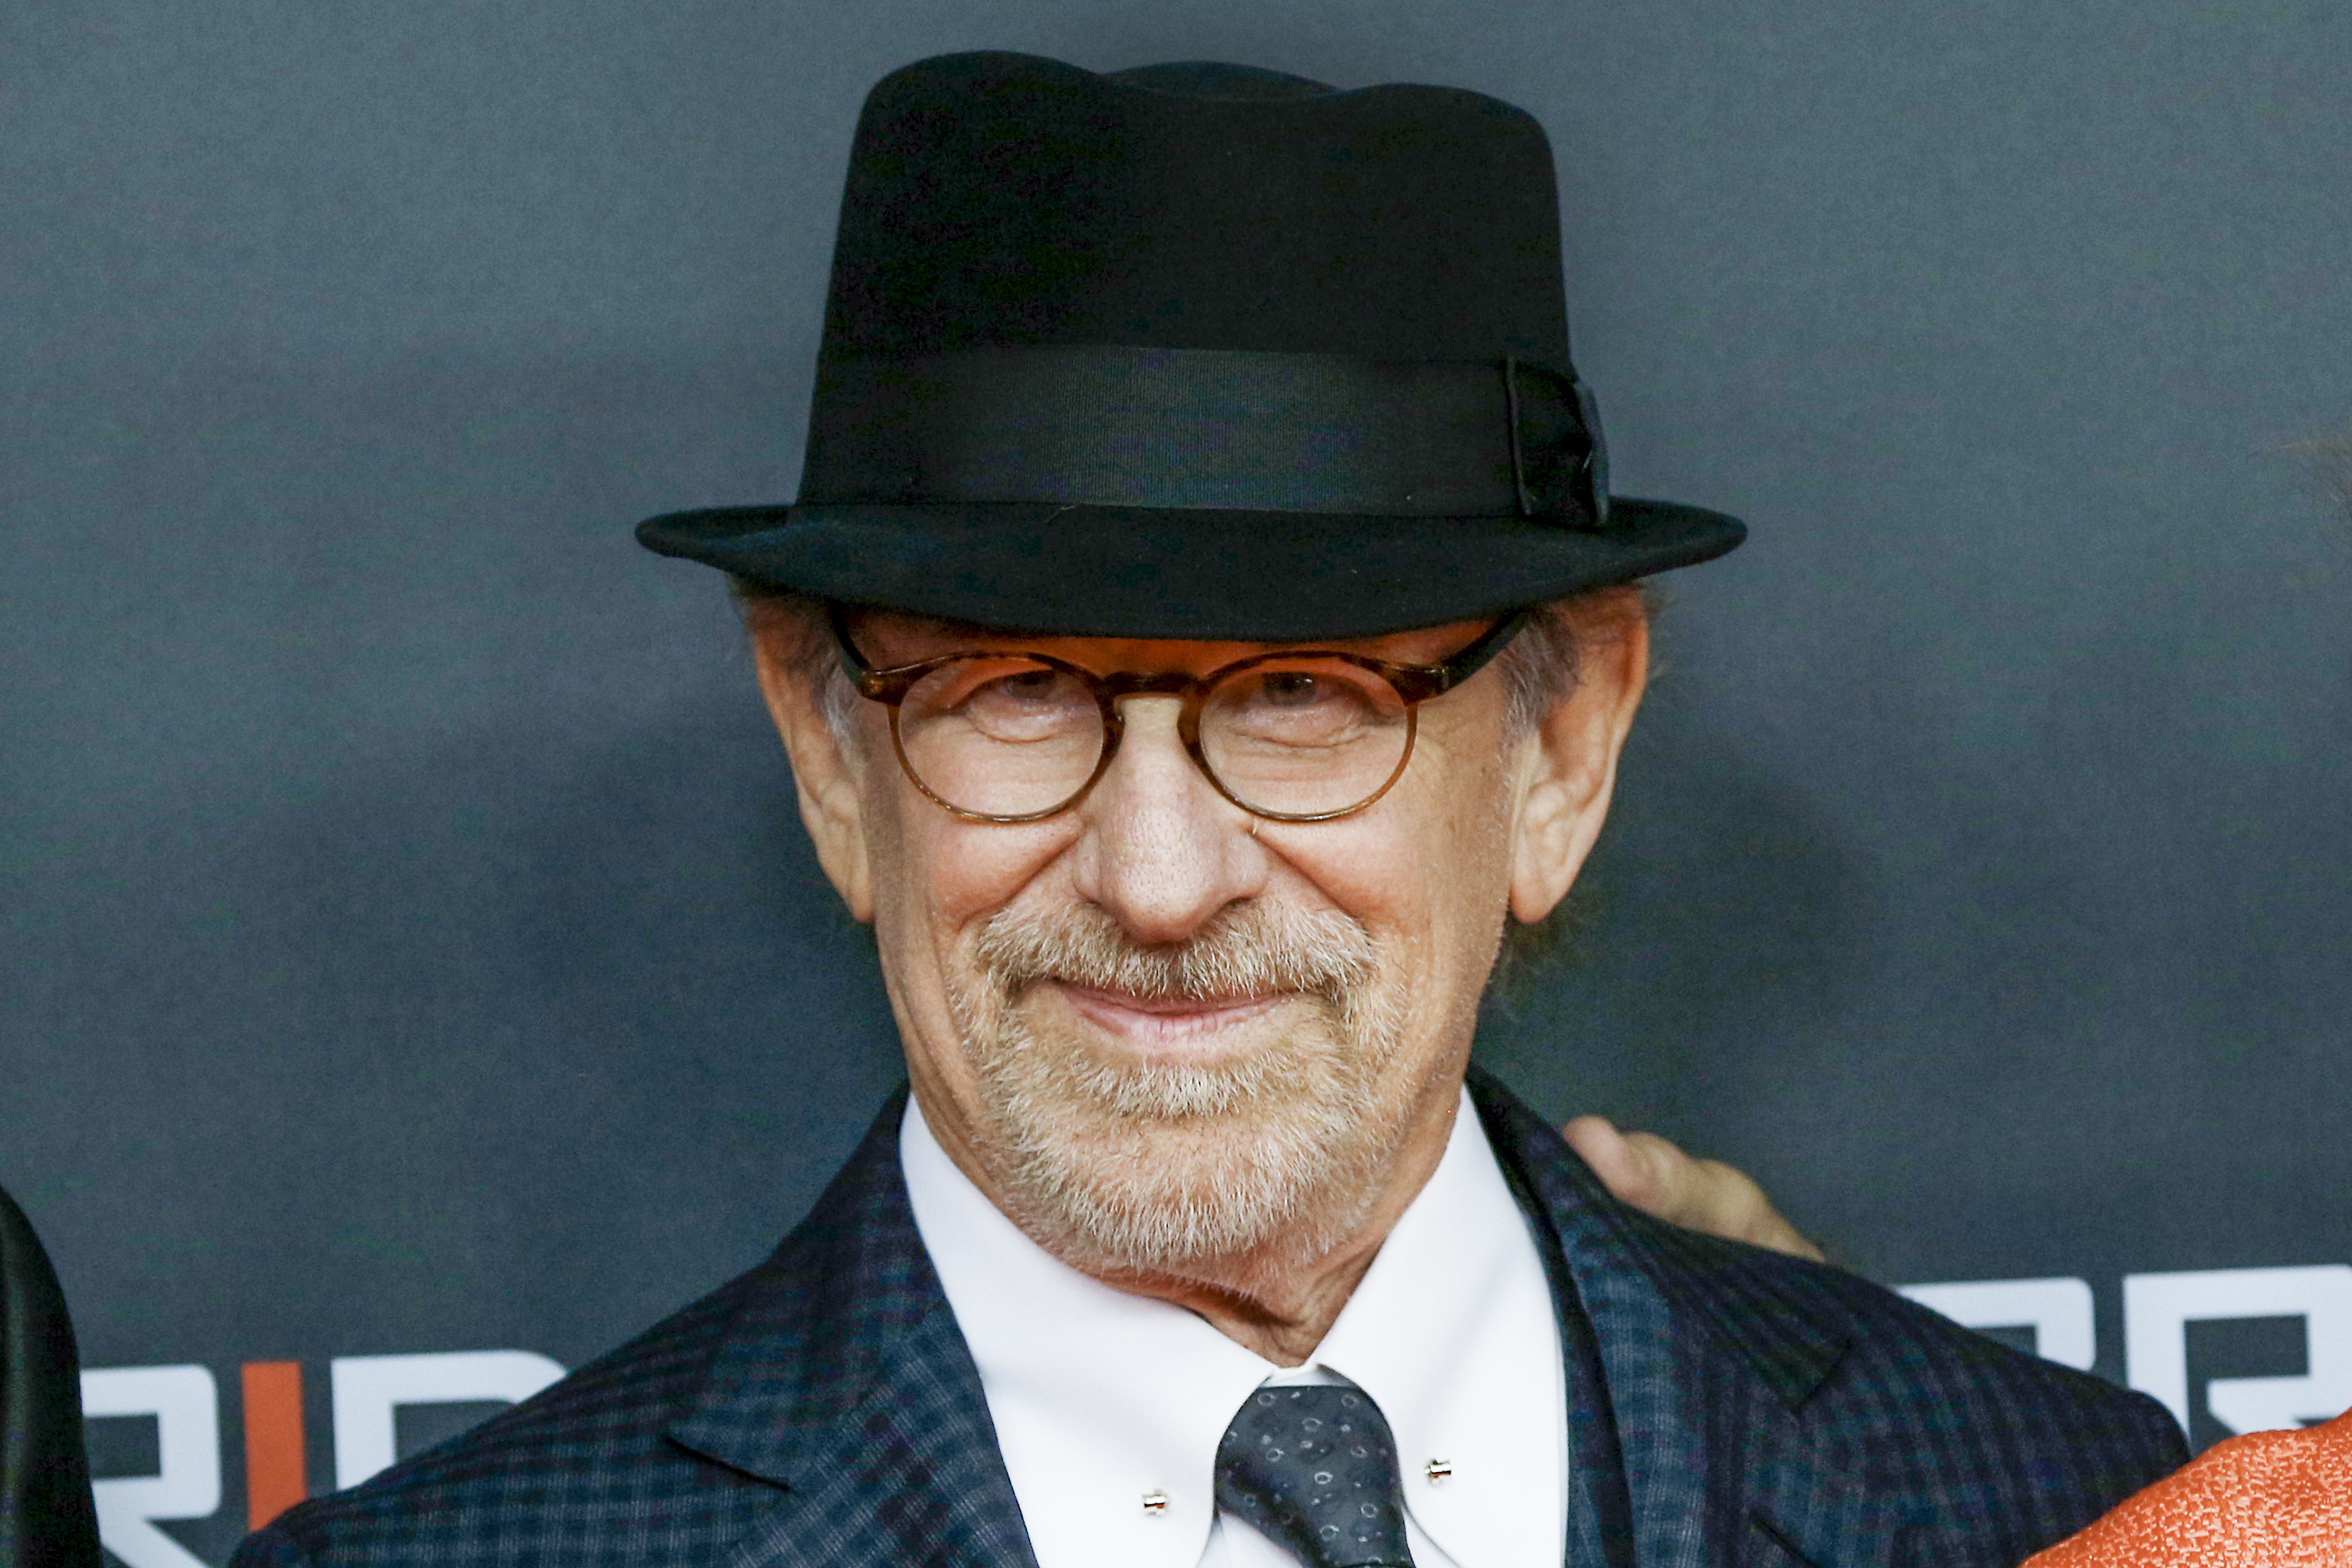 Steven Spielberg attends the 'Bridge of Spies - Der Unterhaendler' World Premiere In Berlin on November 13, 2015 in Berlin, Germany. (Isa Foltin&mdash;WireImage/Getty Images)